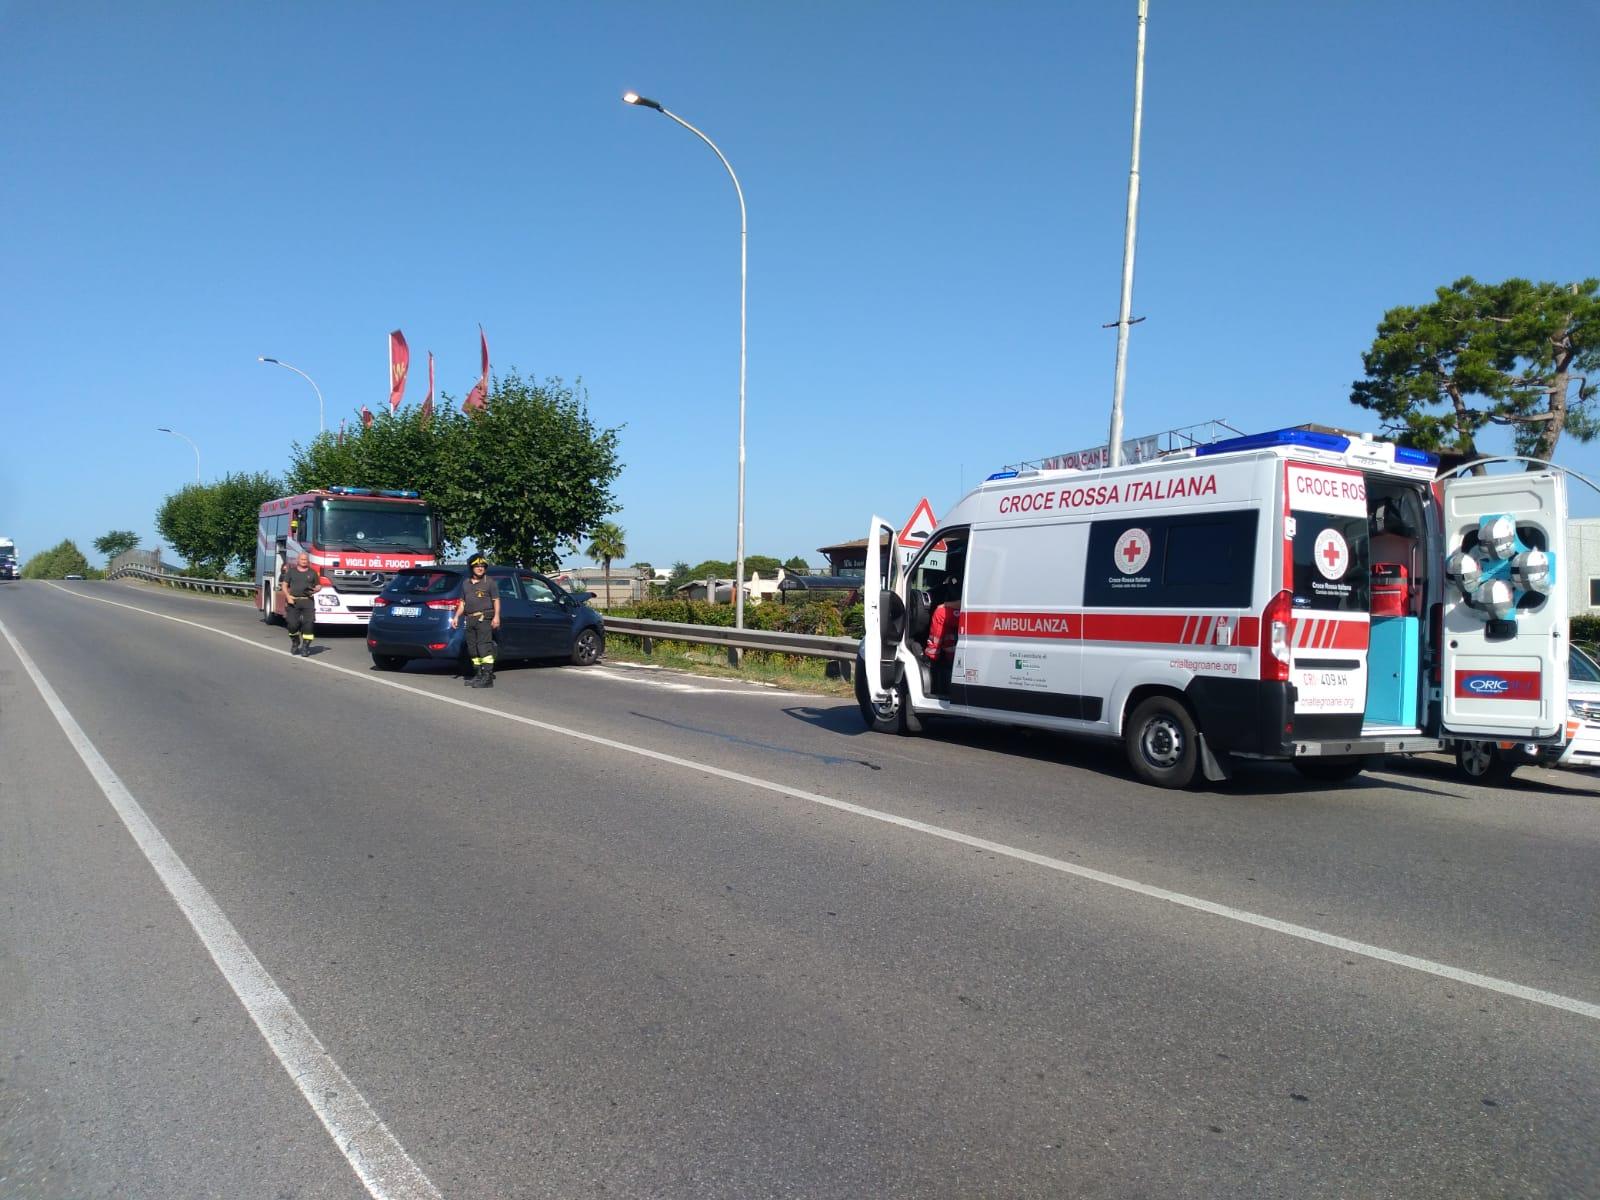 Scontro auto-moto nel tardo pomeriggio in via Piave a Saronno, ragazzo ferito